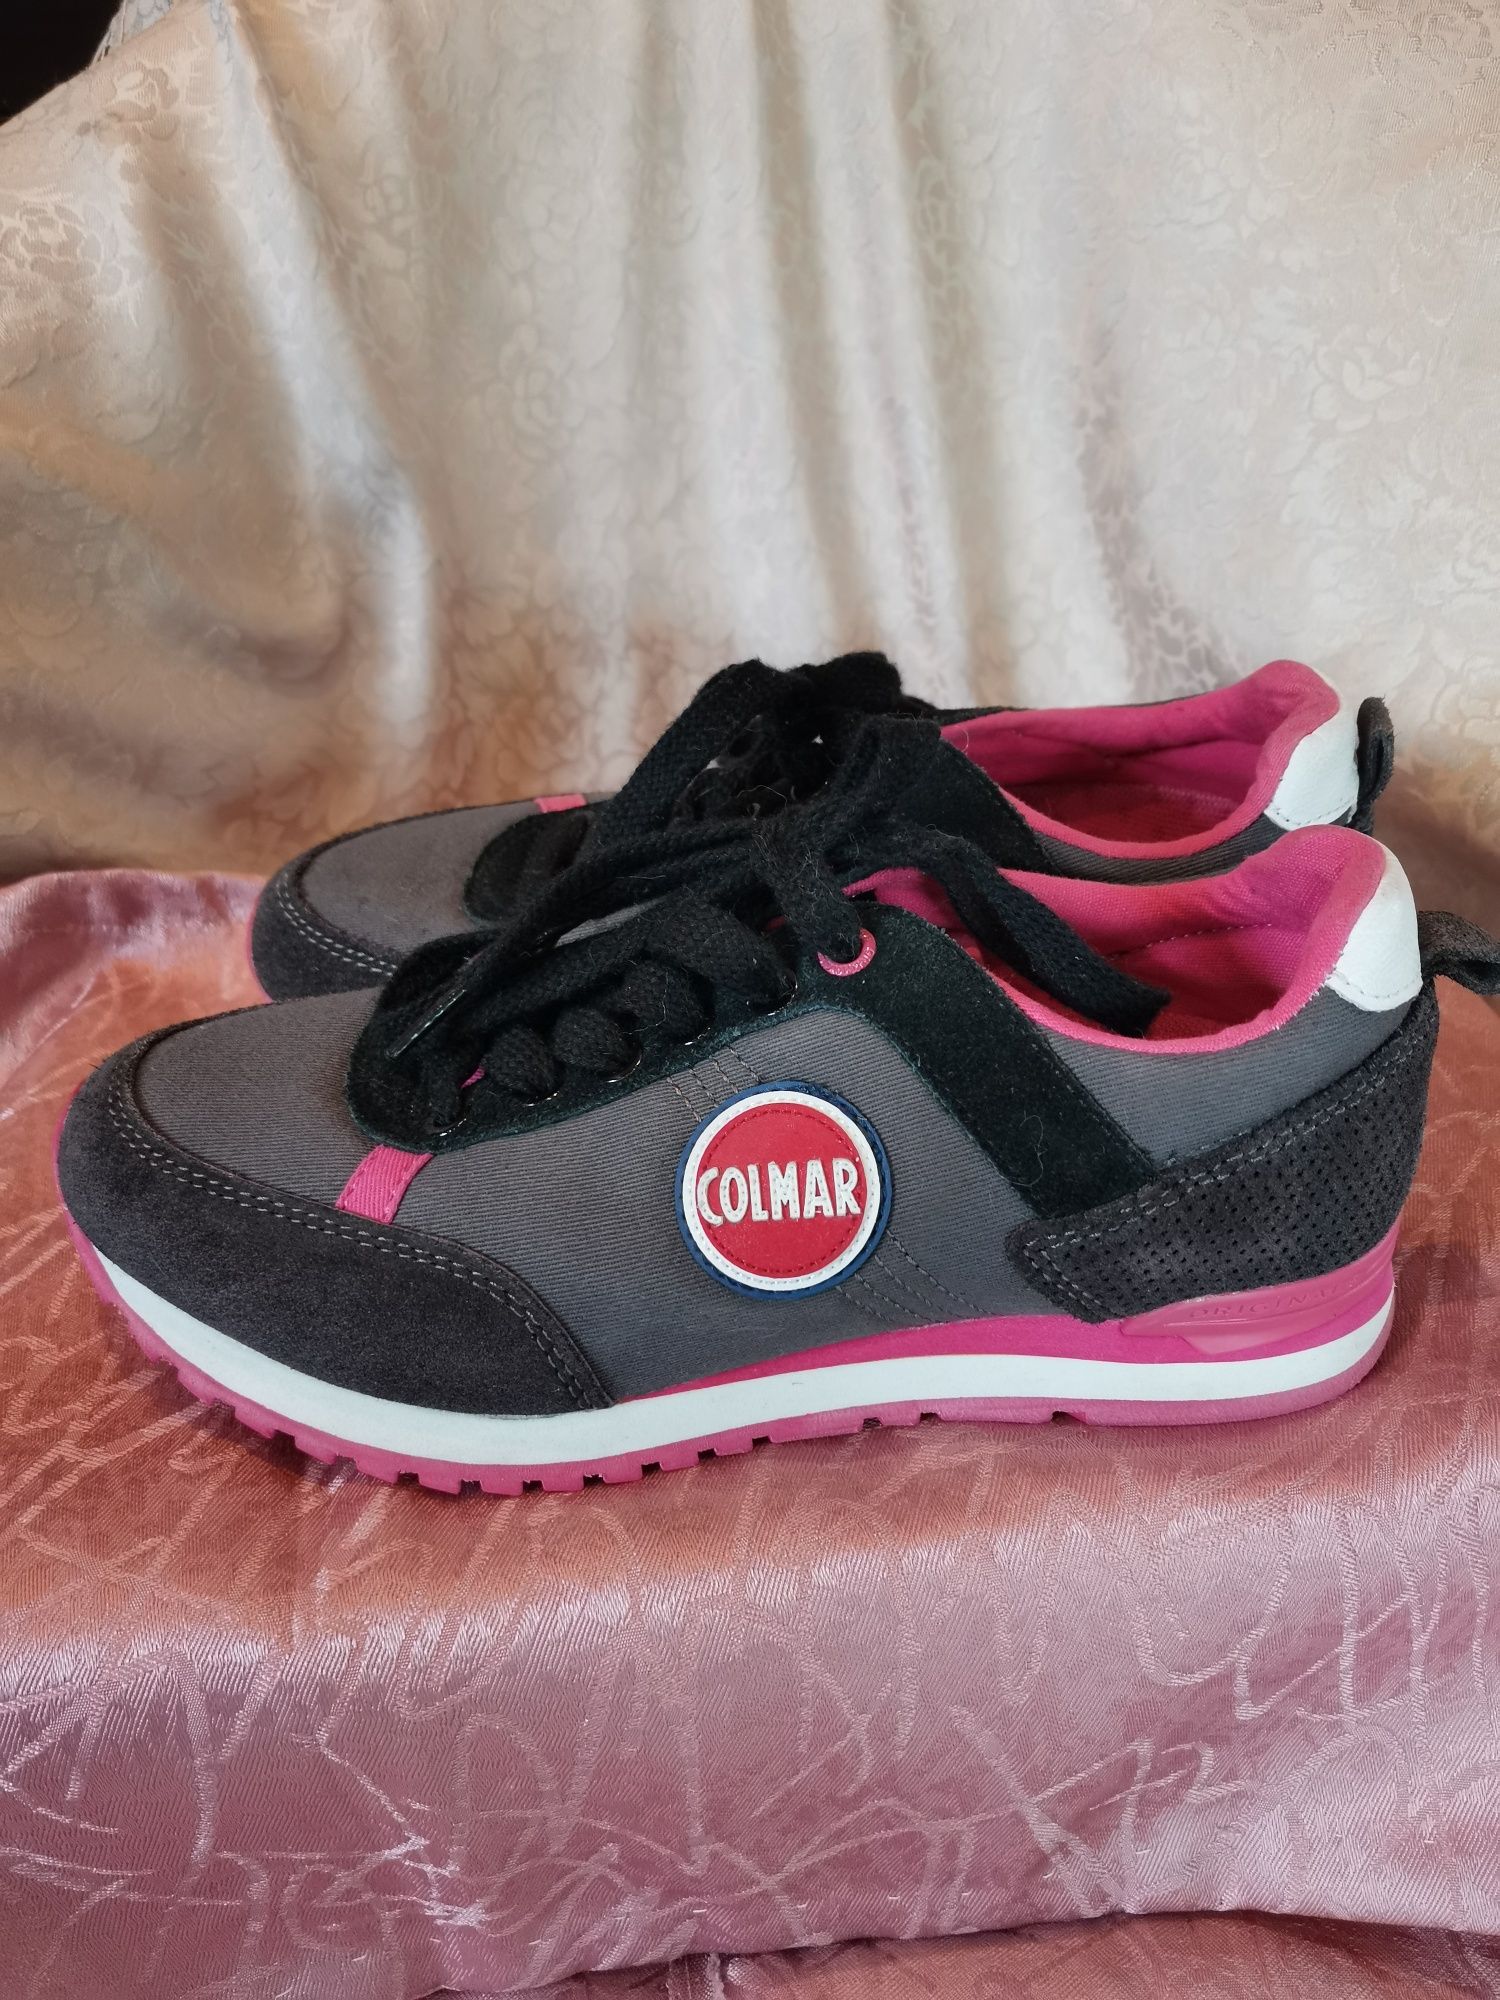 Colmar Orginals buty sportowe damskie rozm 36, szaro - różowe